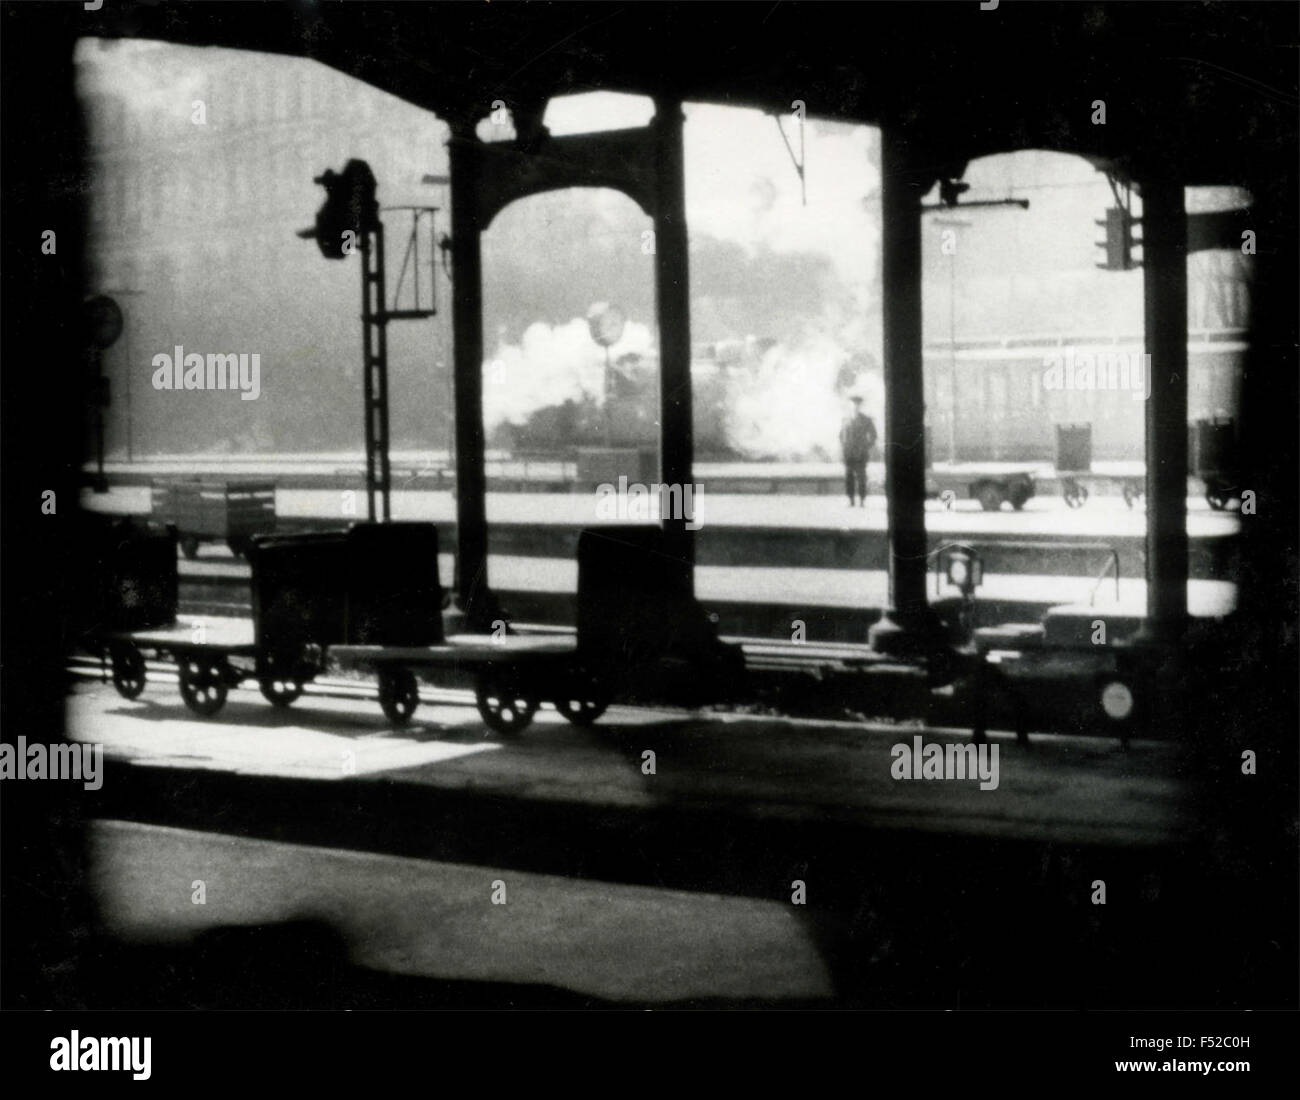 Estación de ferrocarril, Hamburgo, Alemania Foto de stock